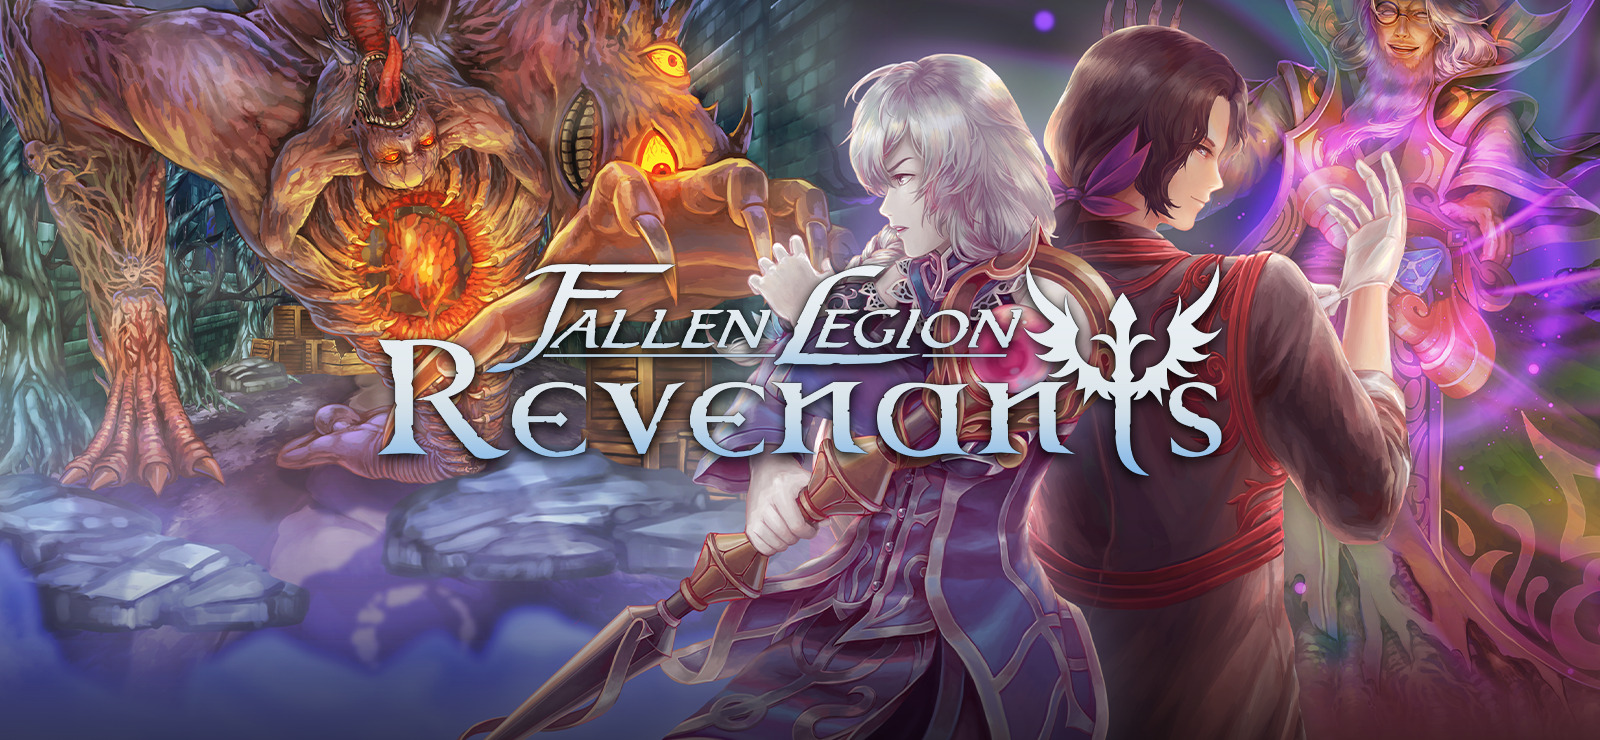 free download Fallen Legion Revenants